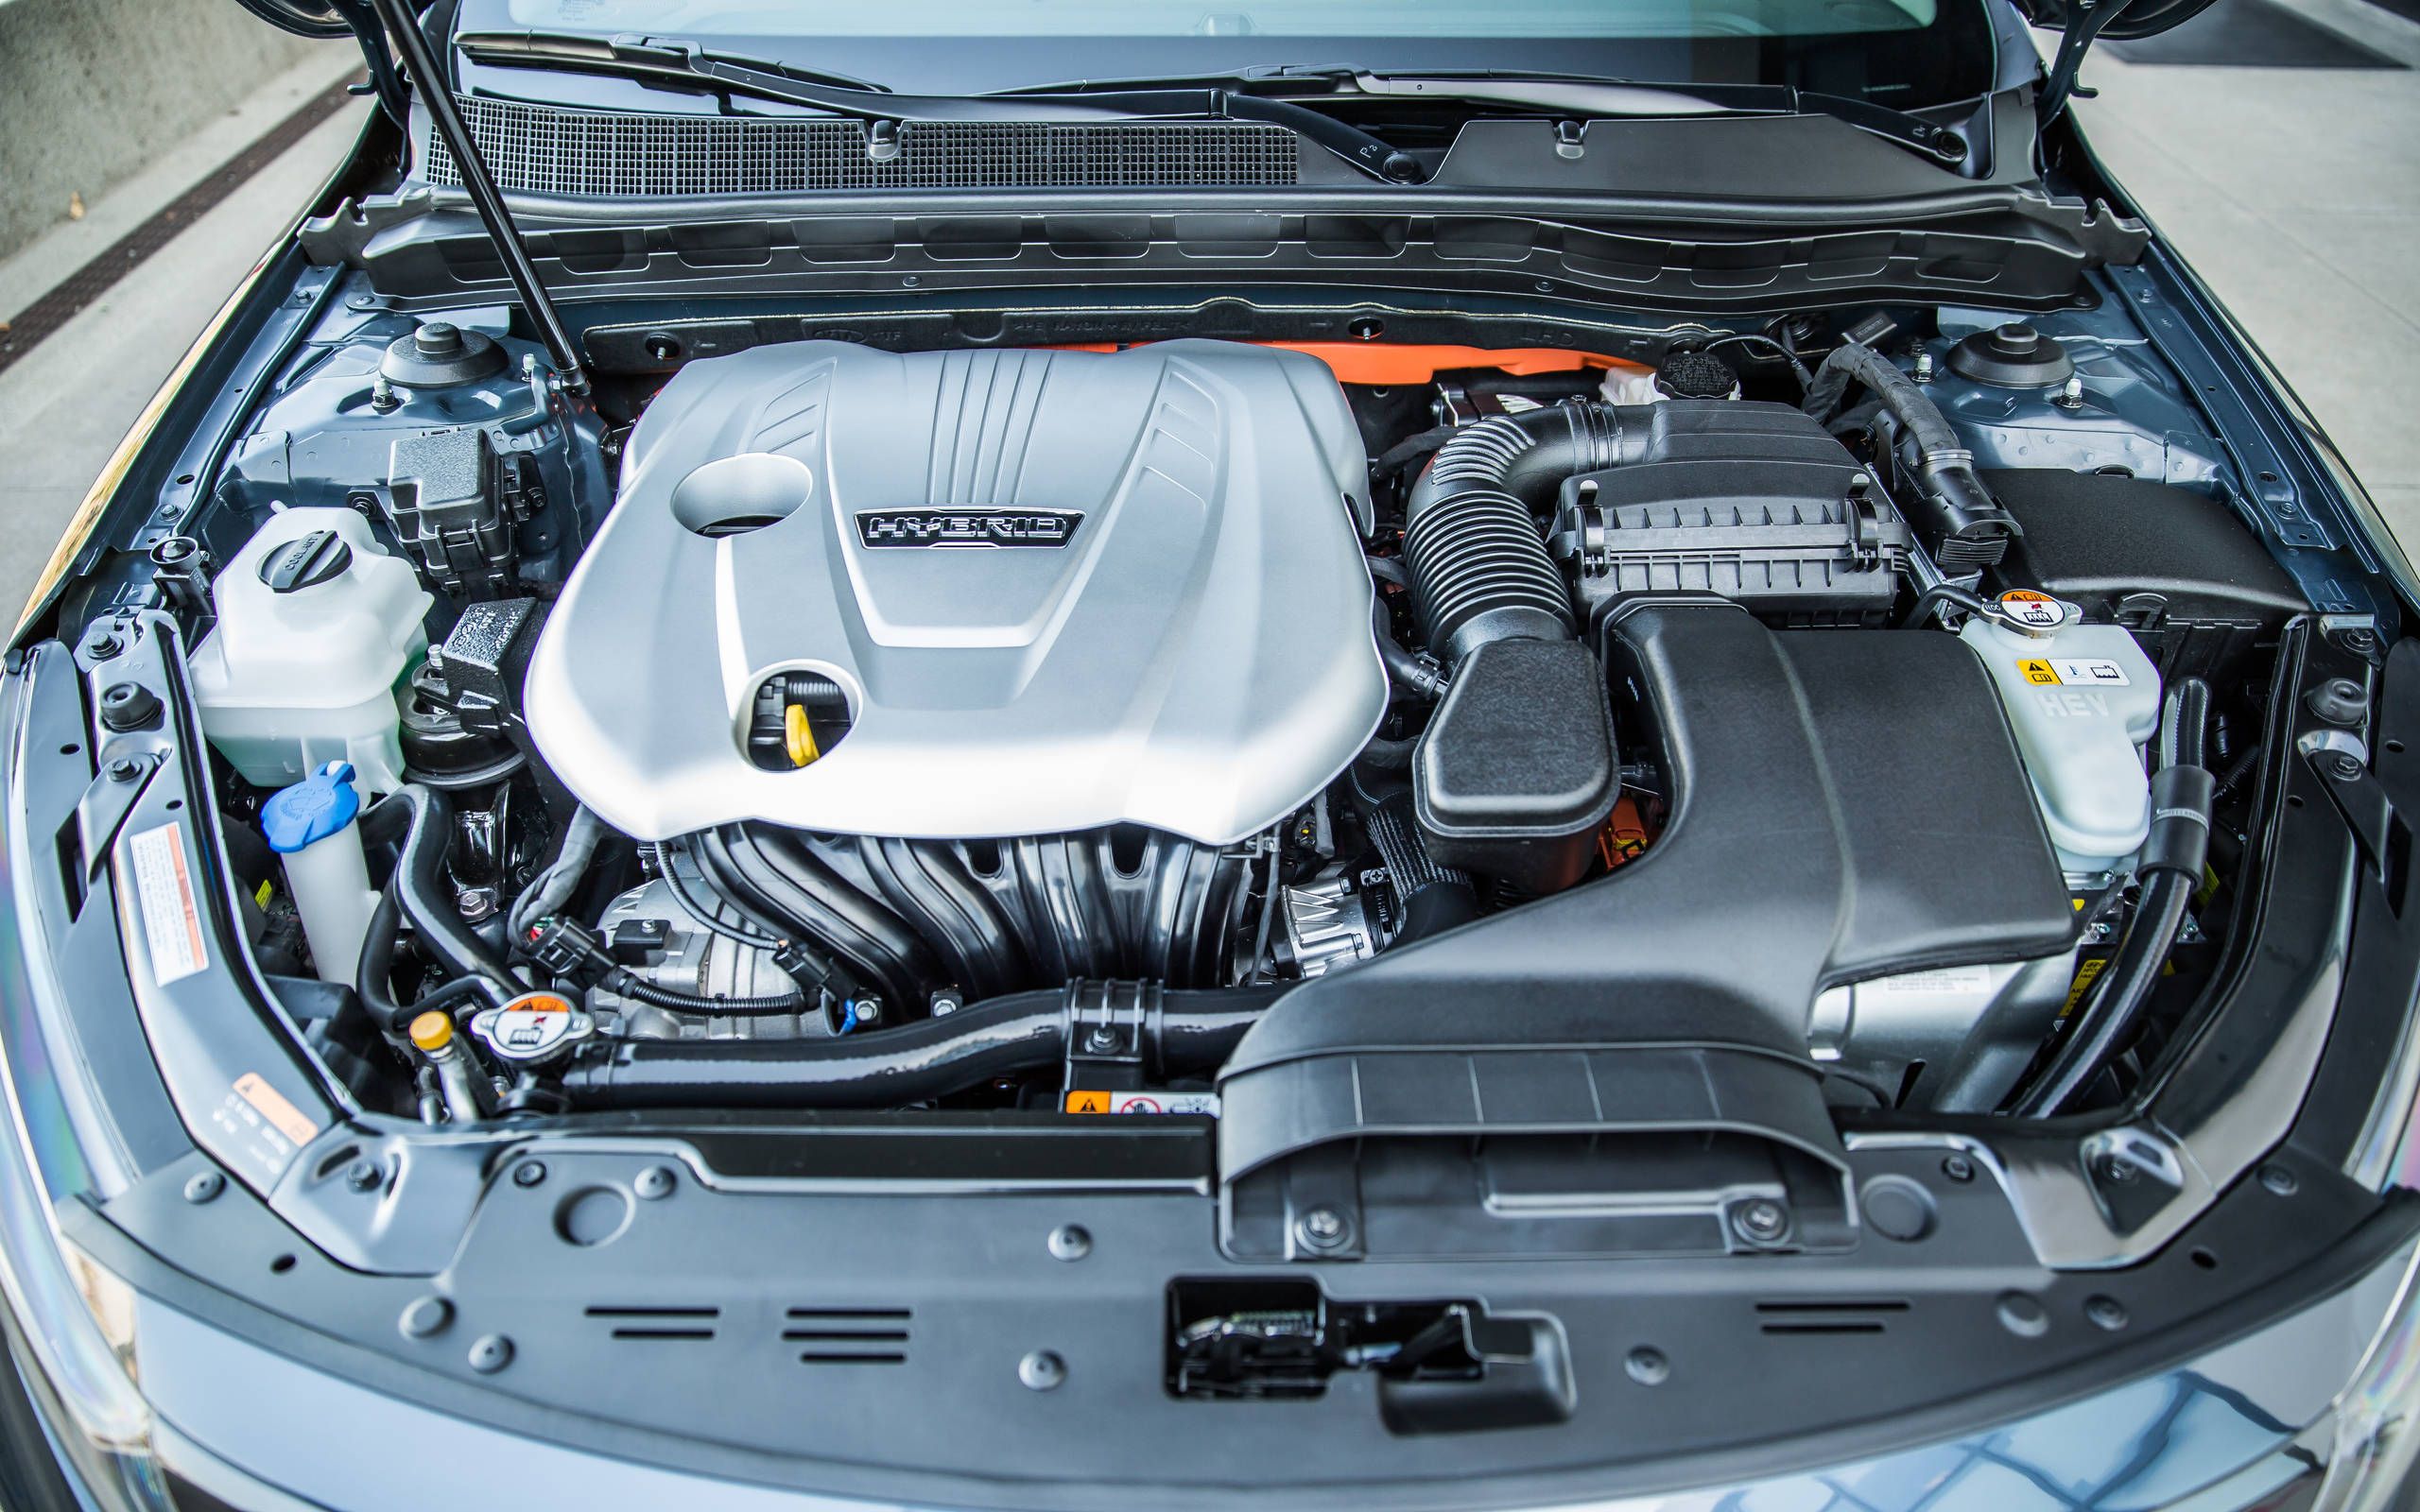 2014 Kia Optima Hybrid EX review notes